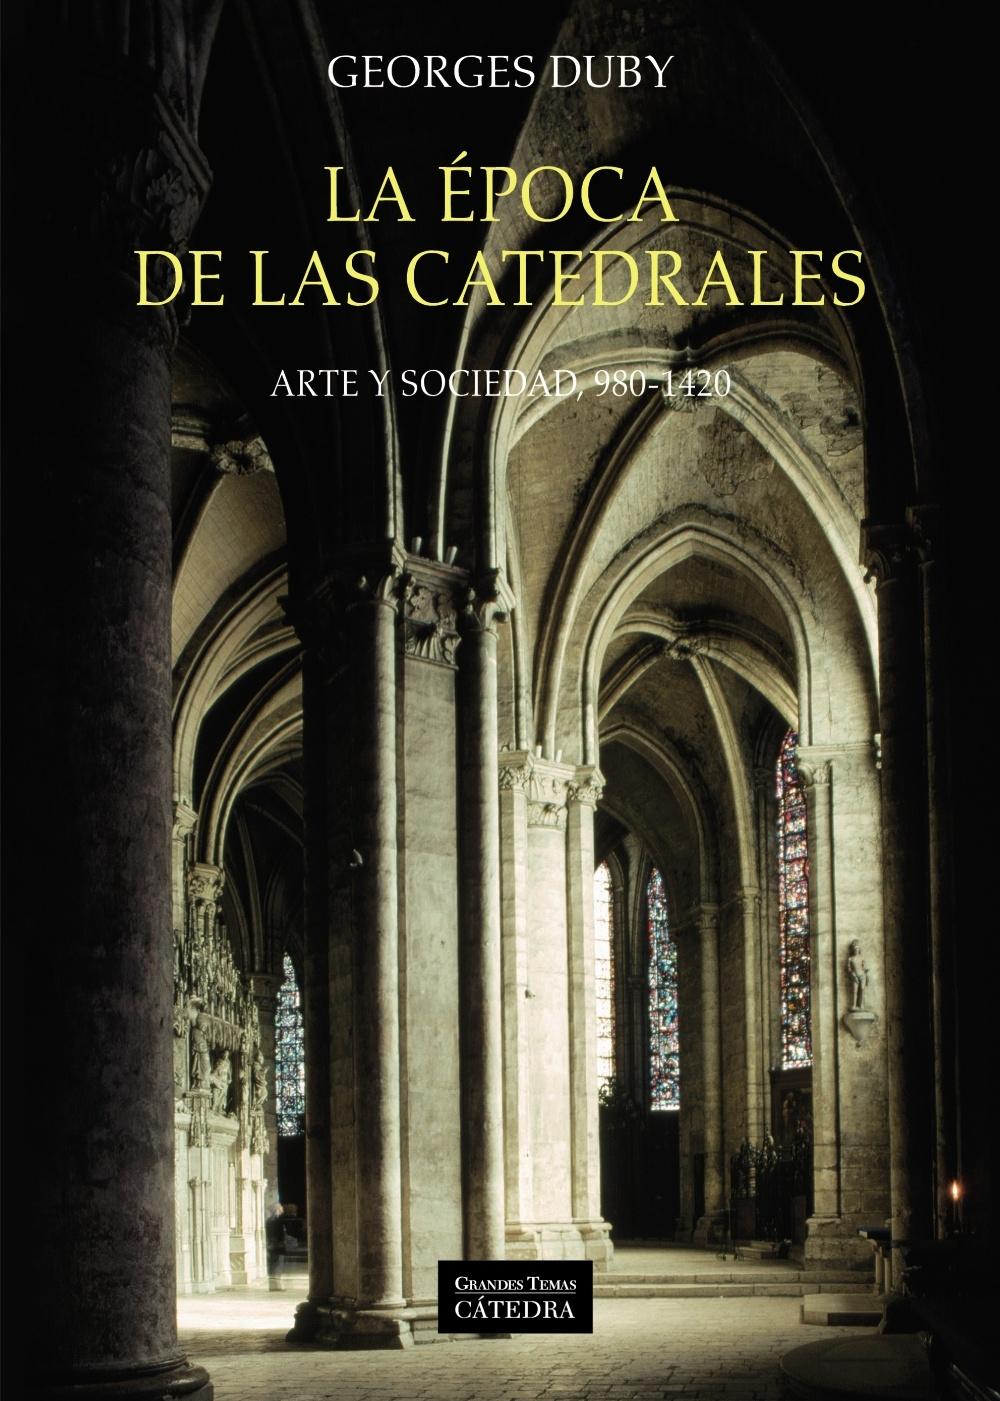 La Época de las Catedrales "Arte y Sociedad, 980-1420"